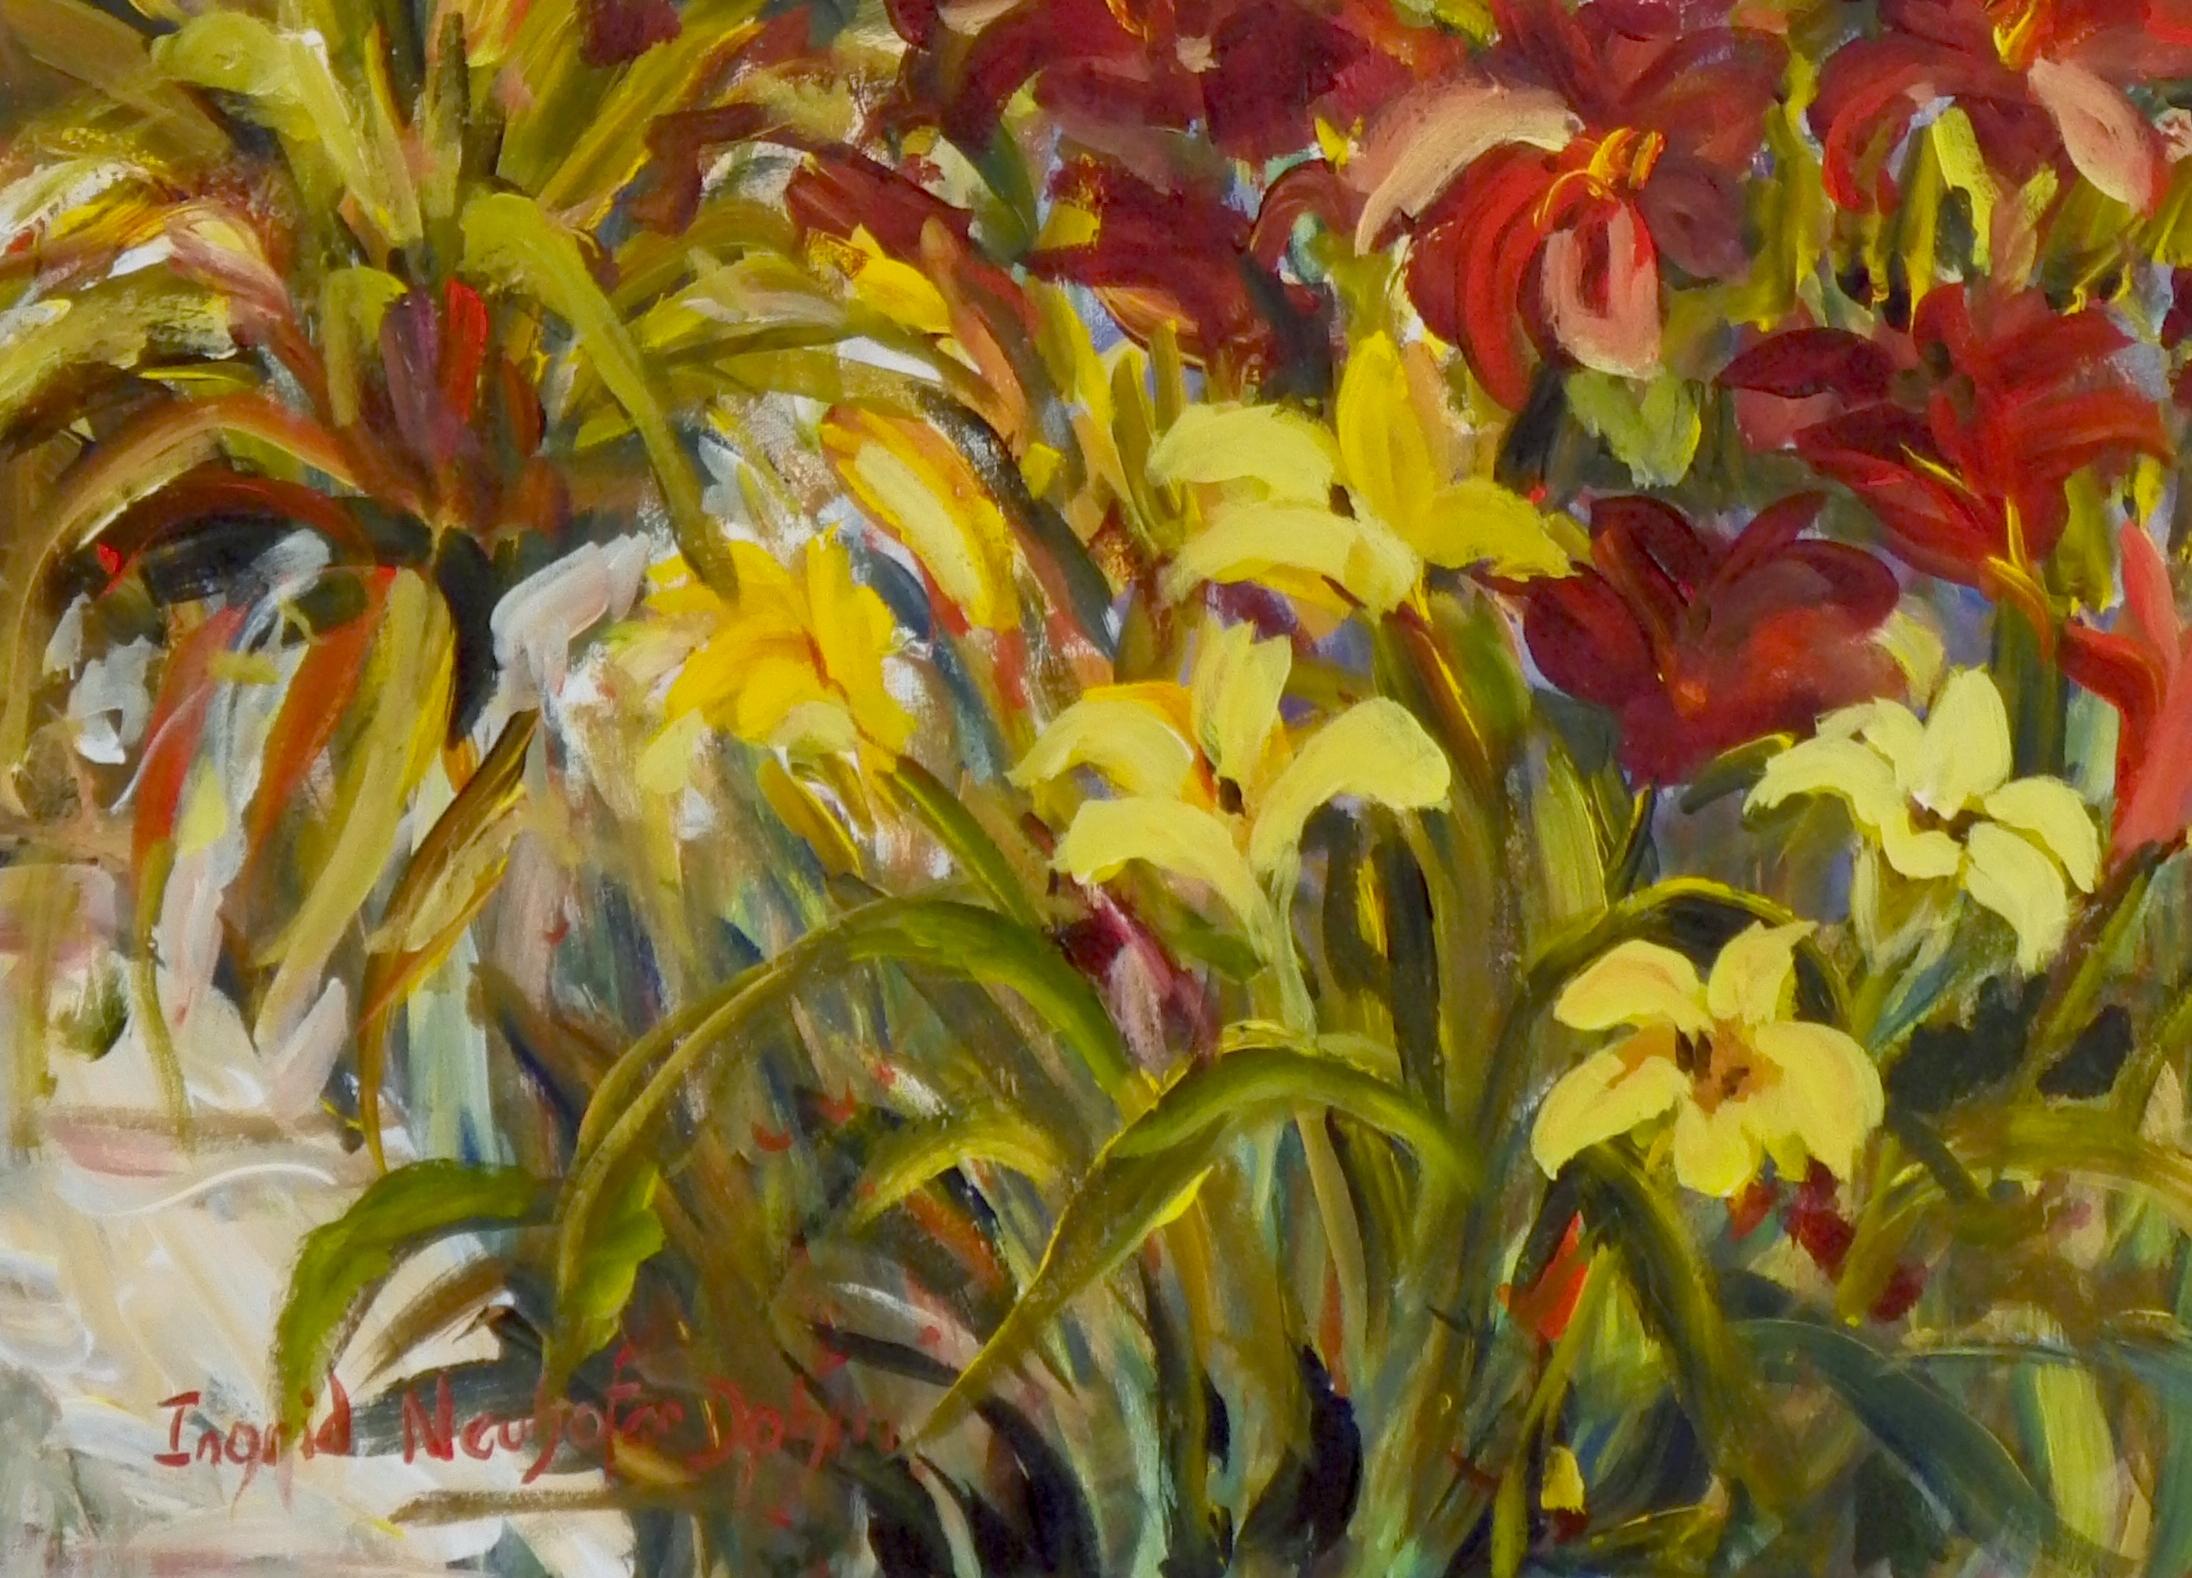 Klehm Lilies, Original Contemporary Impressionist Floral Landscape Painting
40